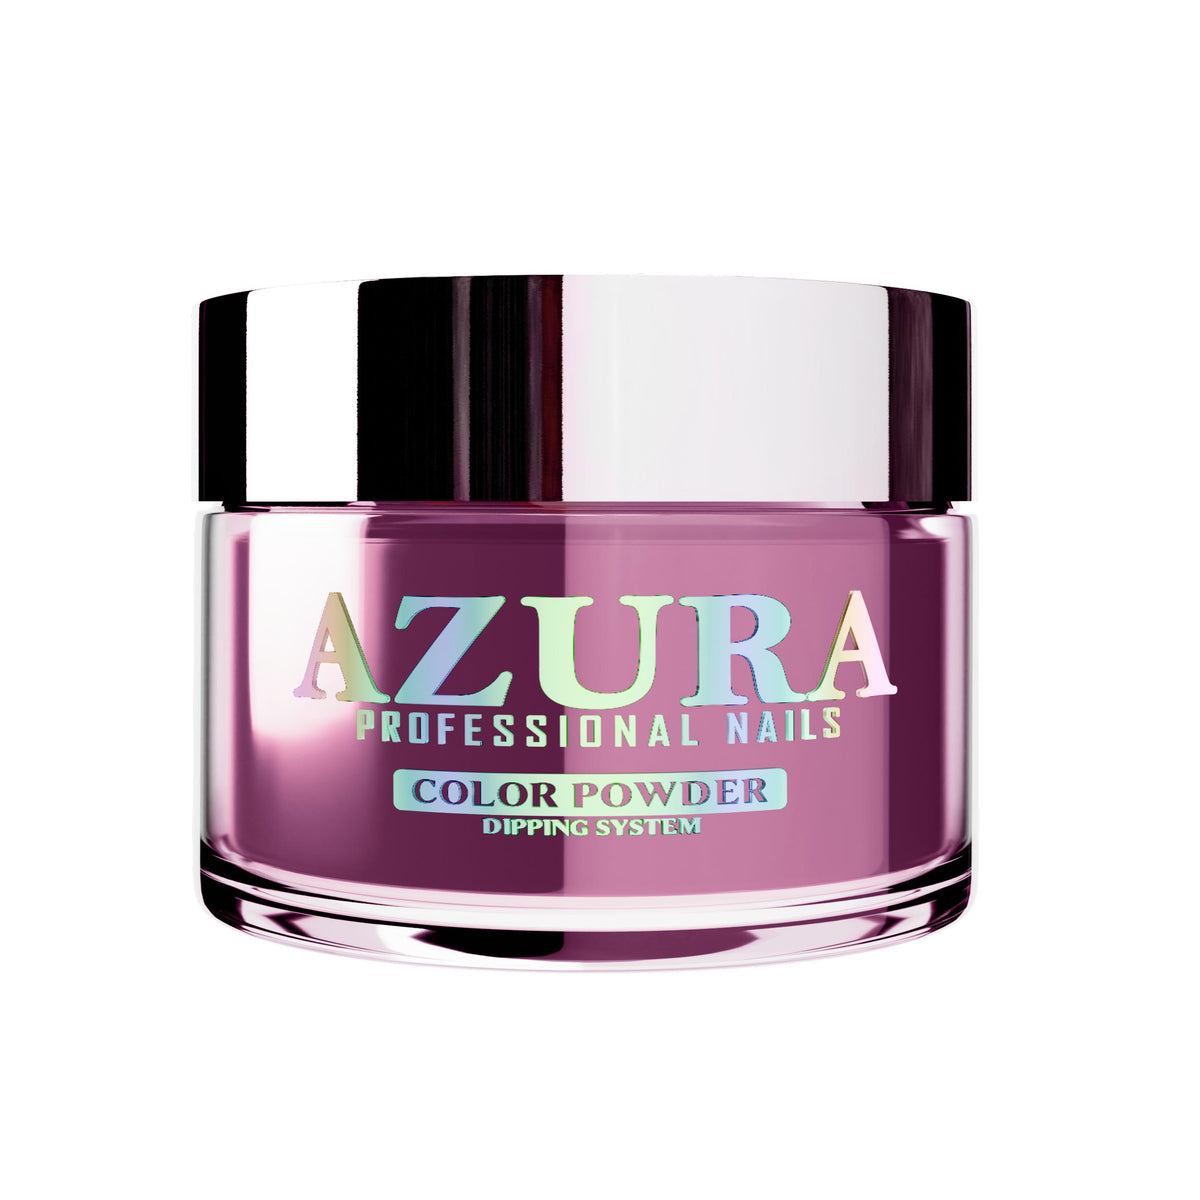 AZURA Acrylic & Dip Powder (Nail Powder 2in1) - My Rose Gold - 035-AZURA- Nail Supply American Gel Polish - Phuong Ni